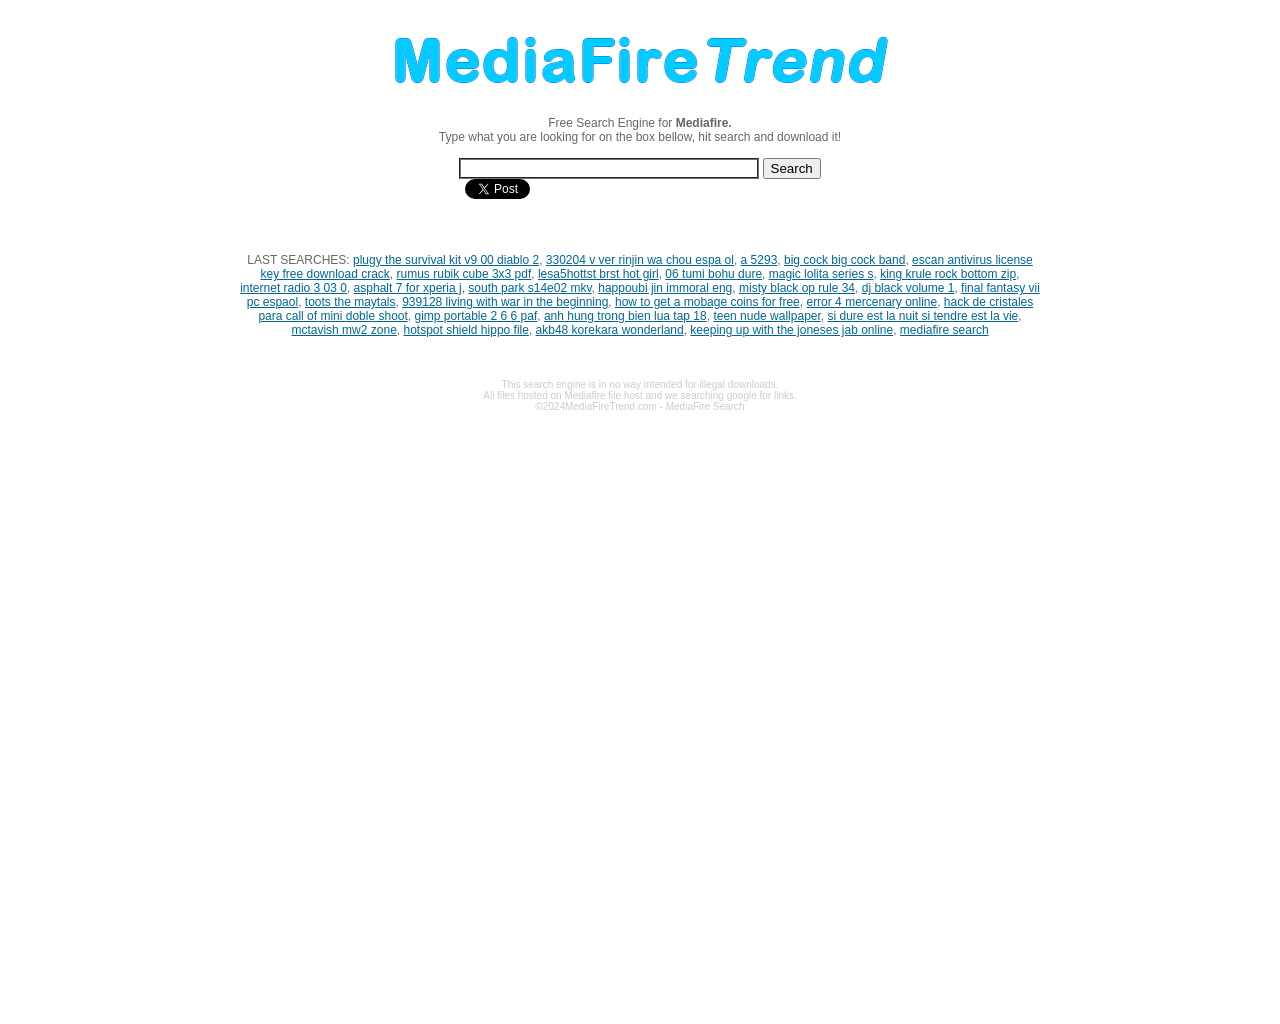 mediafiretrend.com